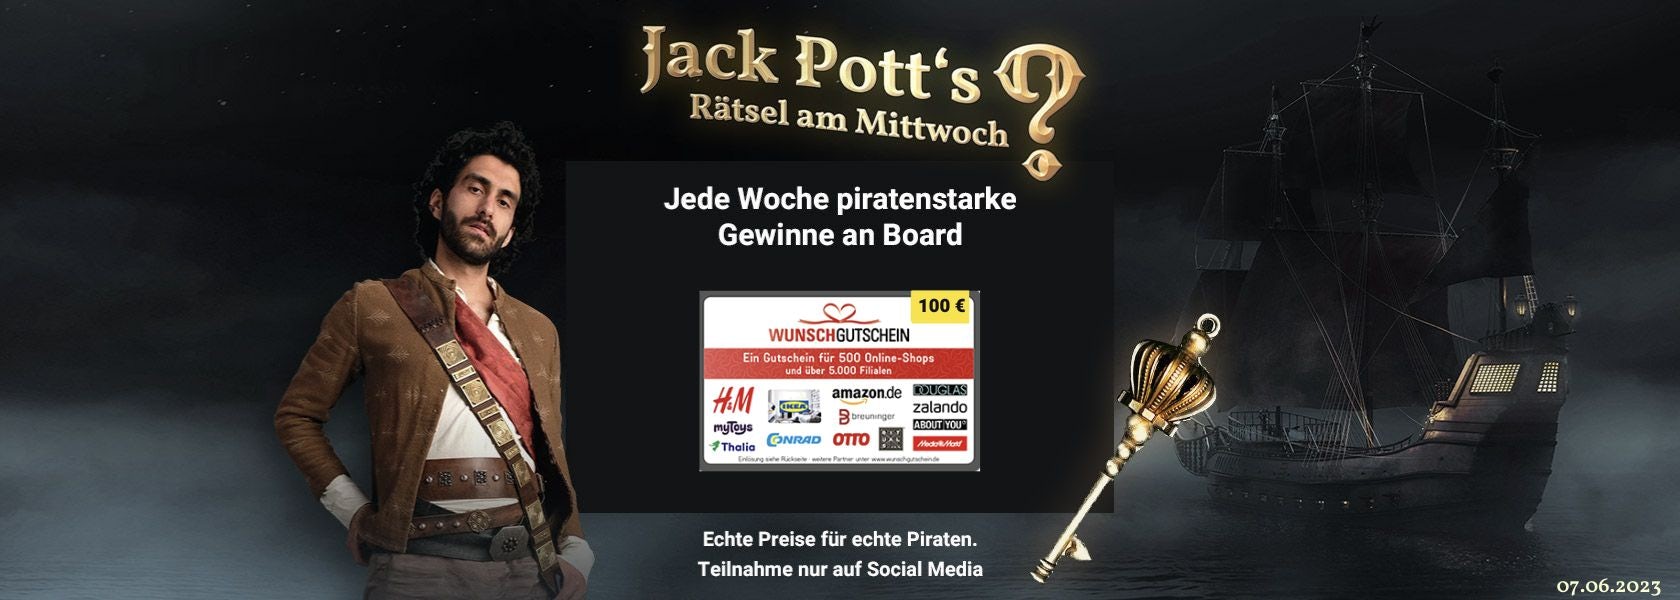 JPI-Header-Jack-Potts-Rätsel-Am-Mittwoch-0706